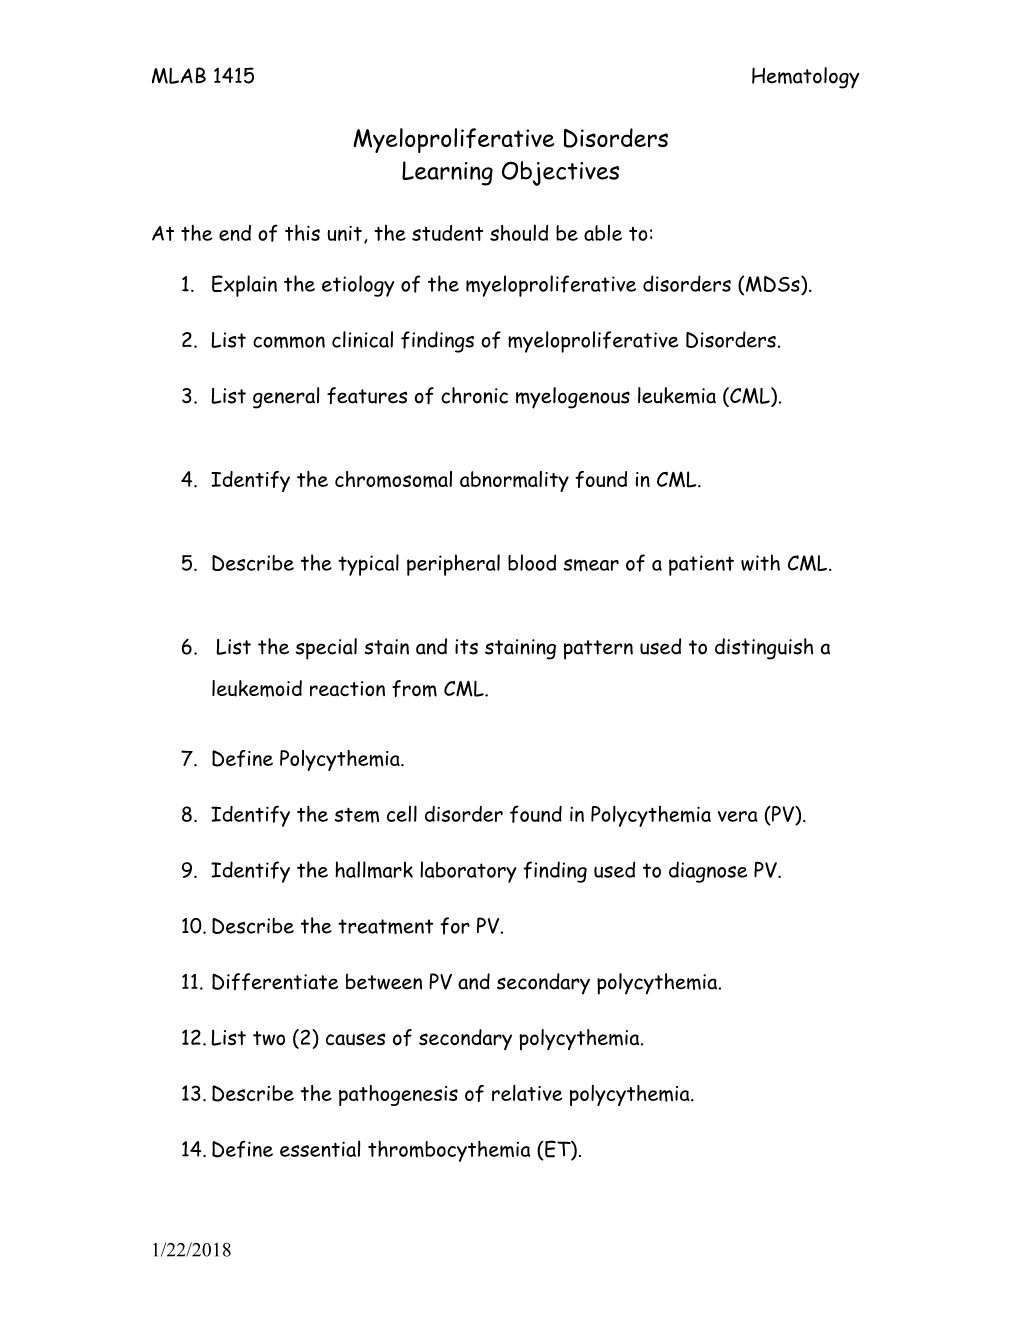 Unit 21 Objectives: Chronic Myeloproliferative Disorders